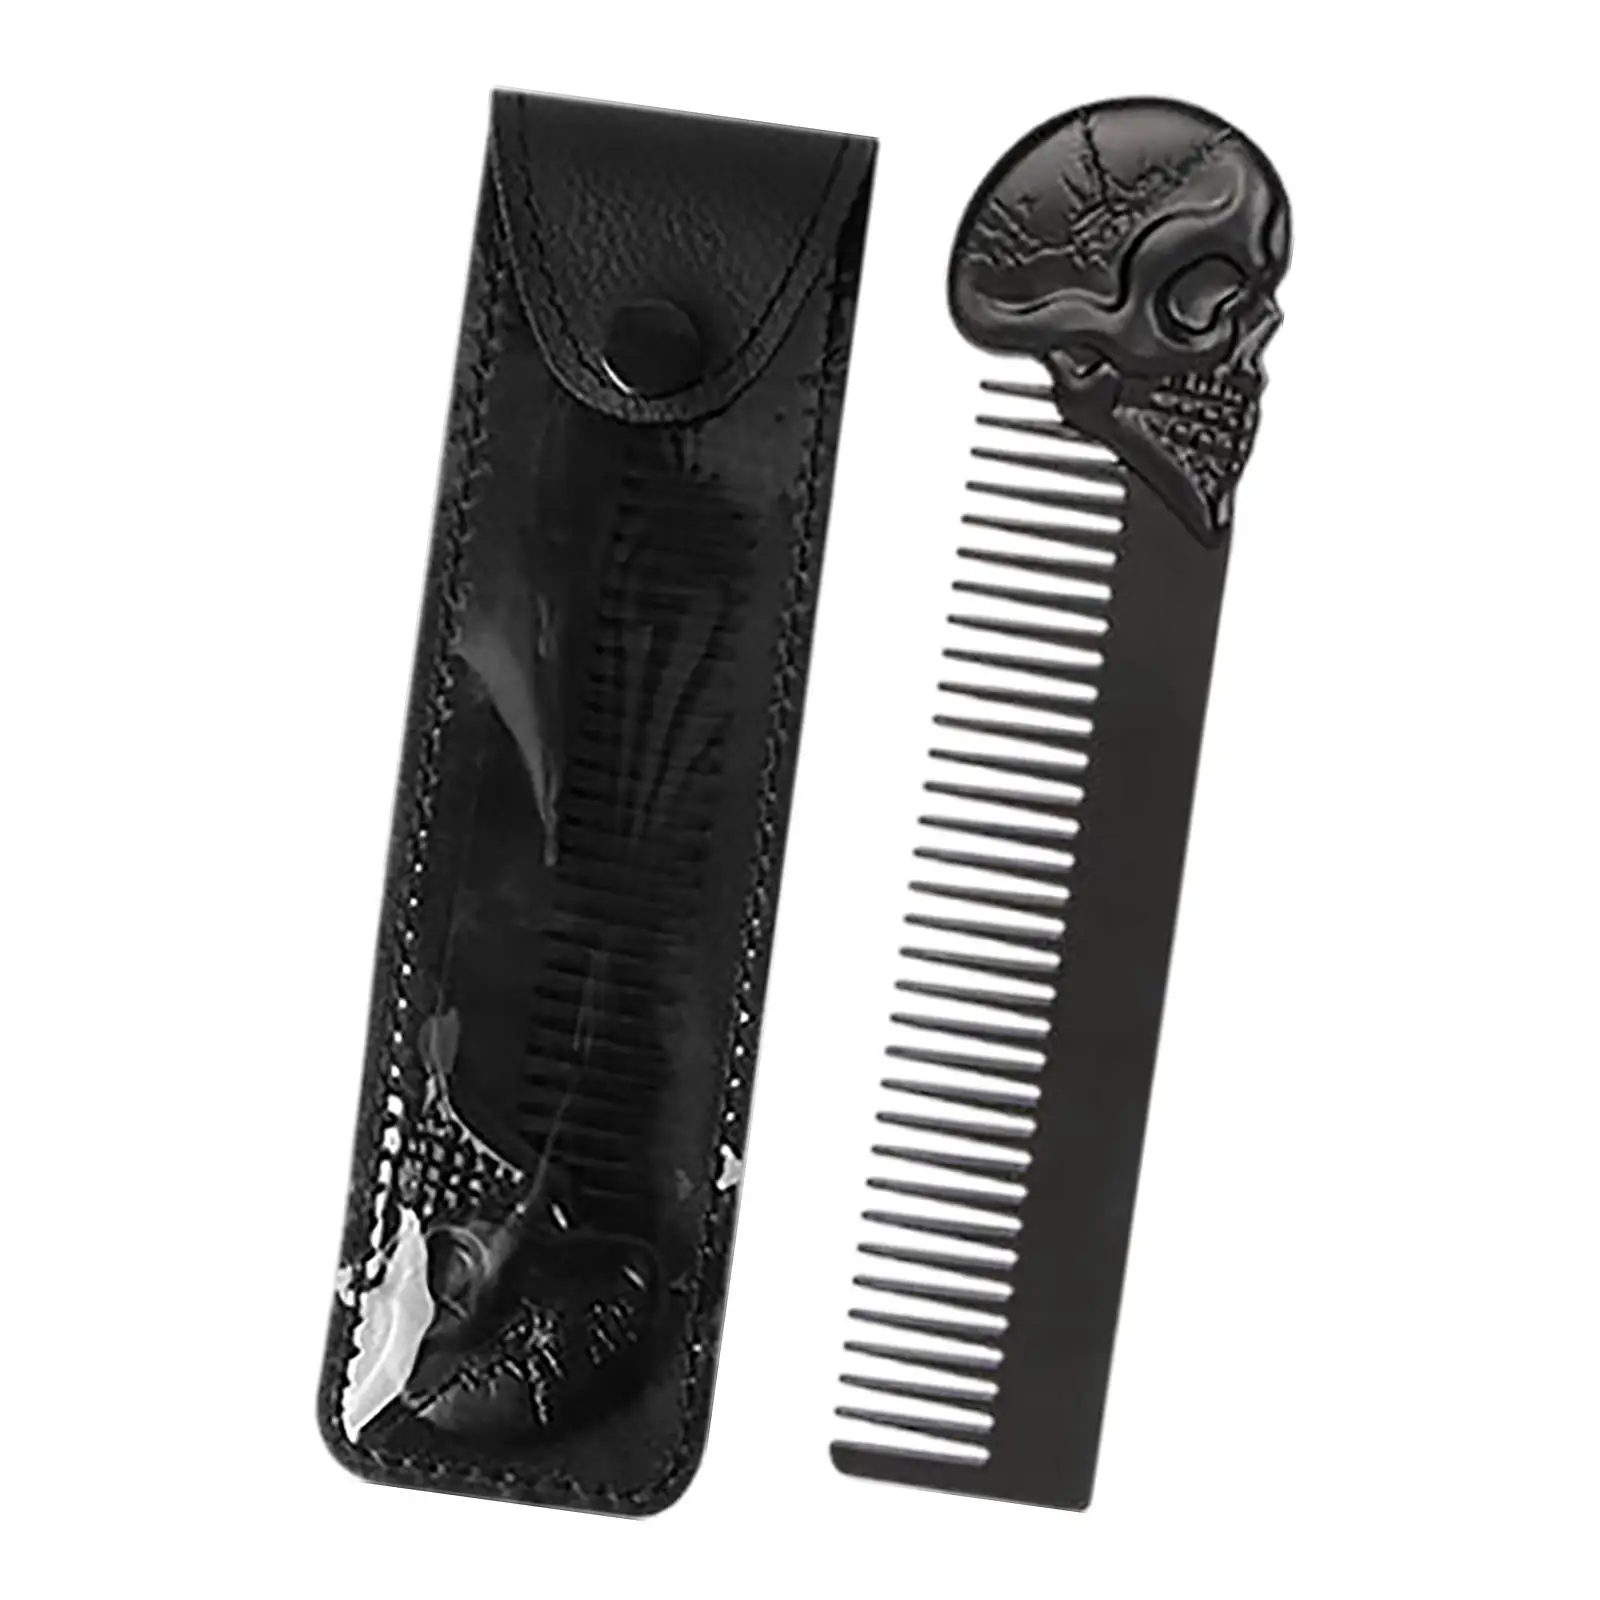 Comb for Men Metal Pocket Comb Hairdressing Barber